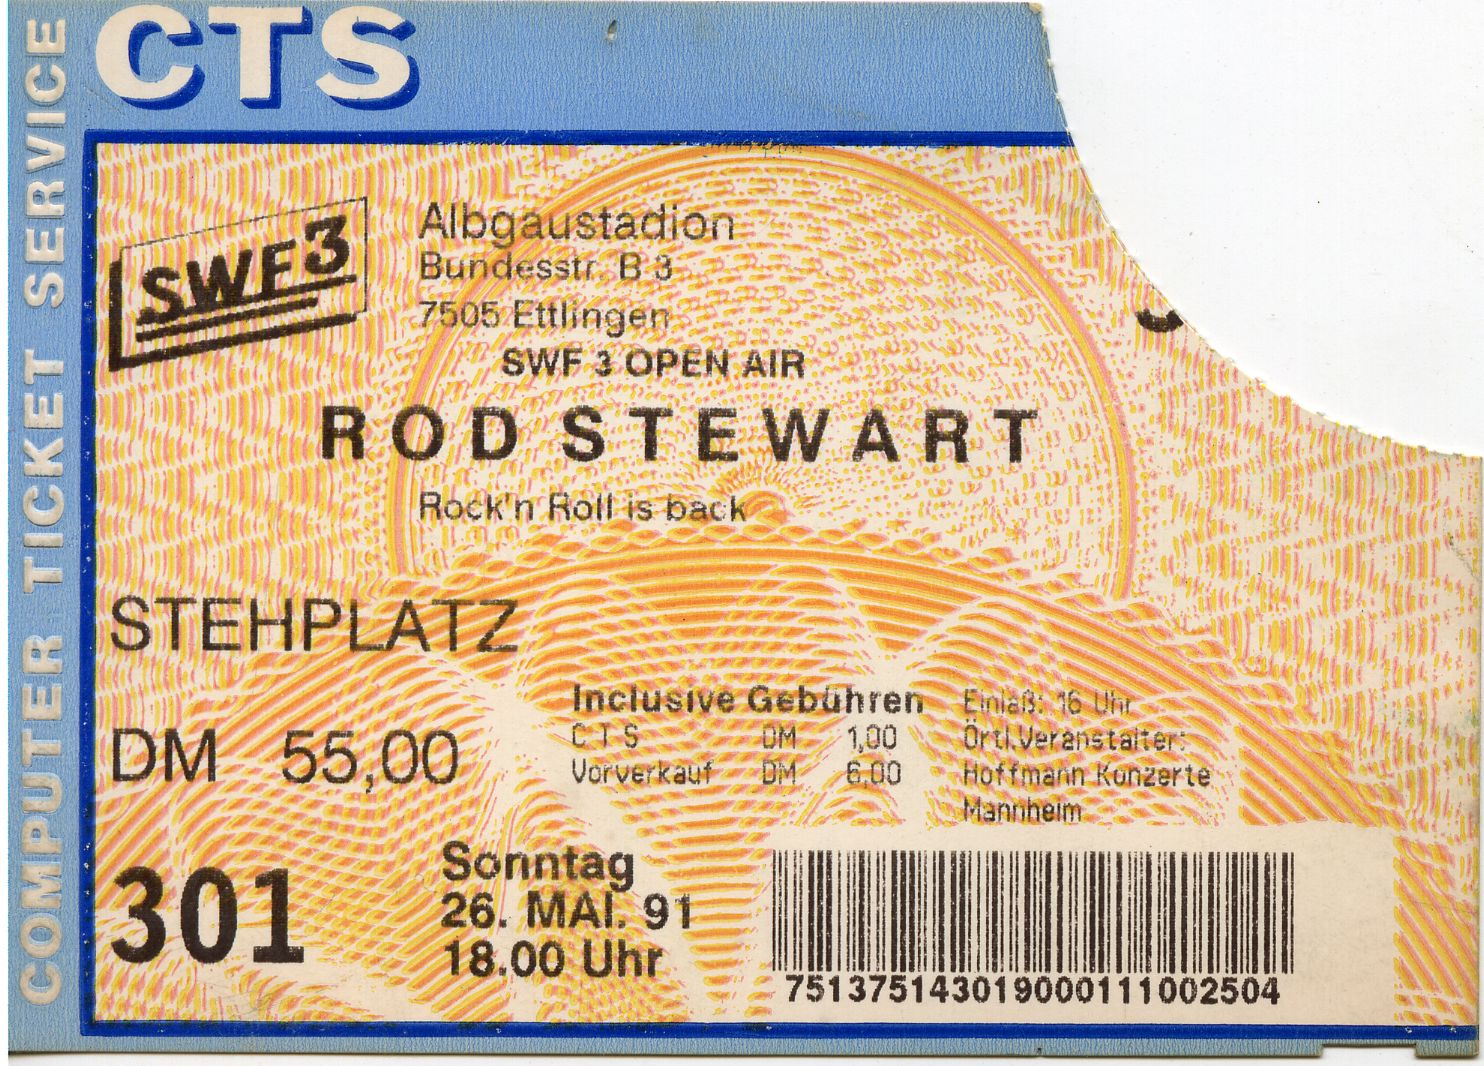 Rod Stewart 1991 Ettlingen.jpg